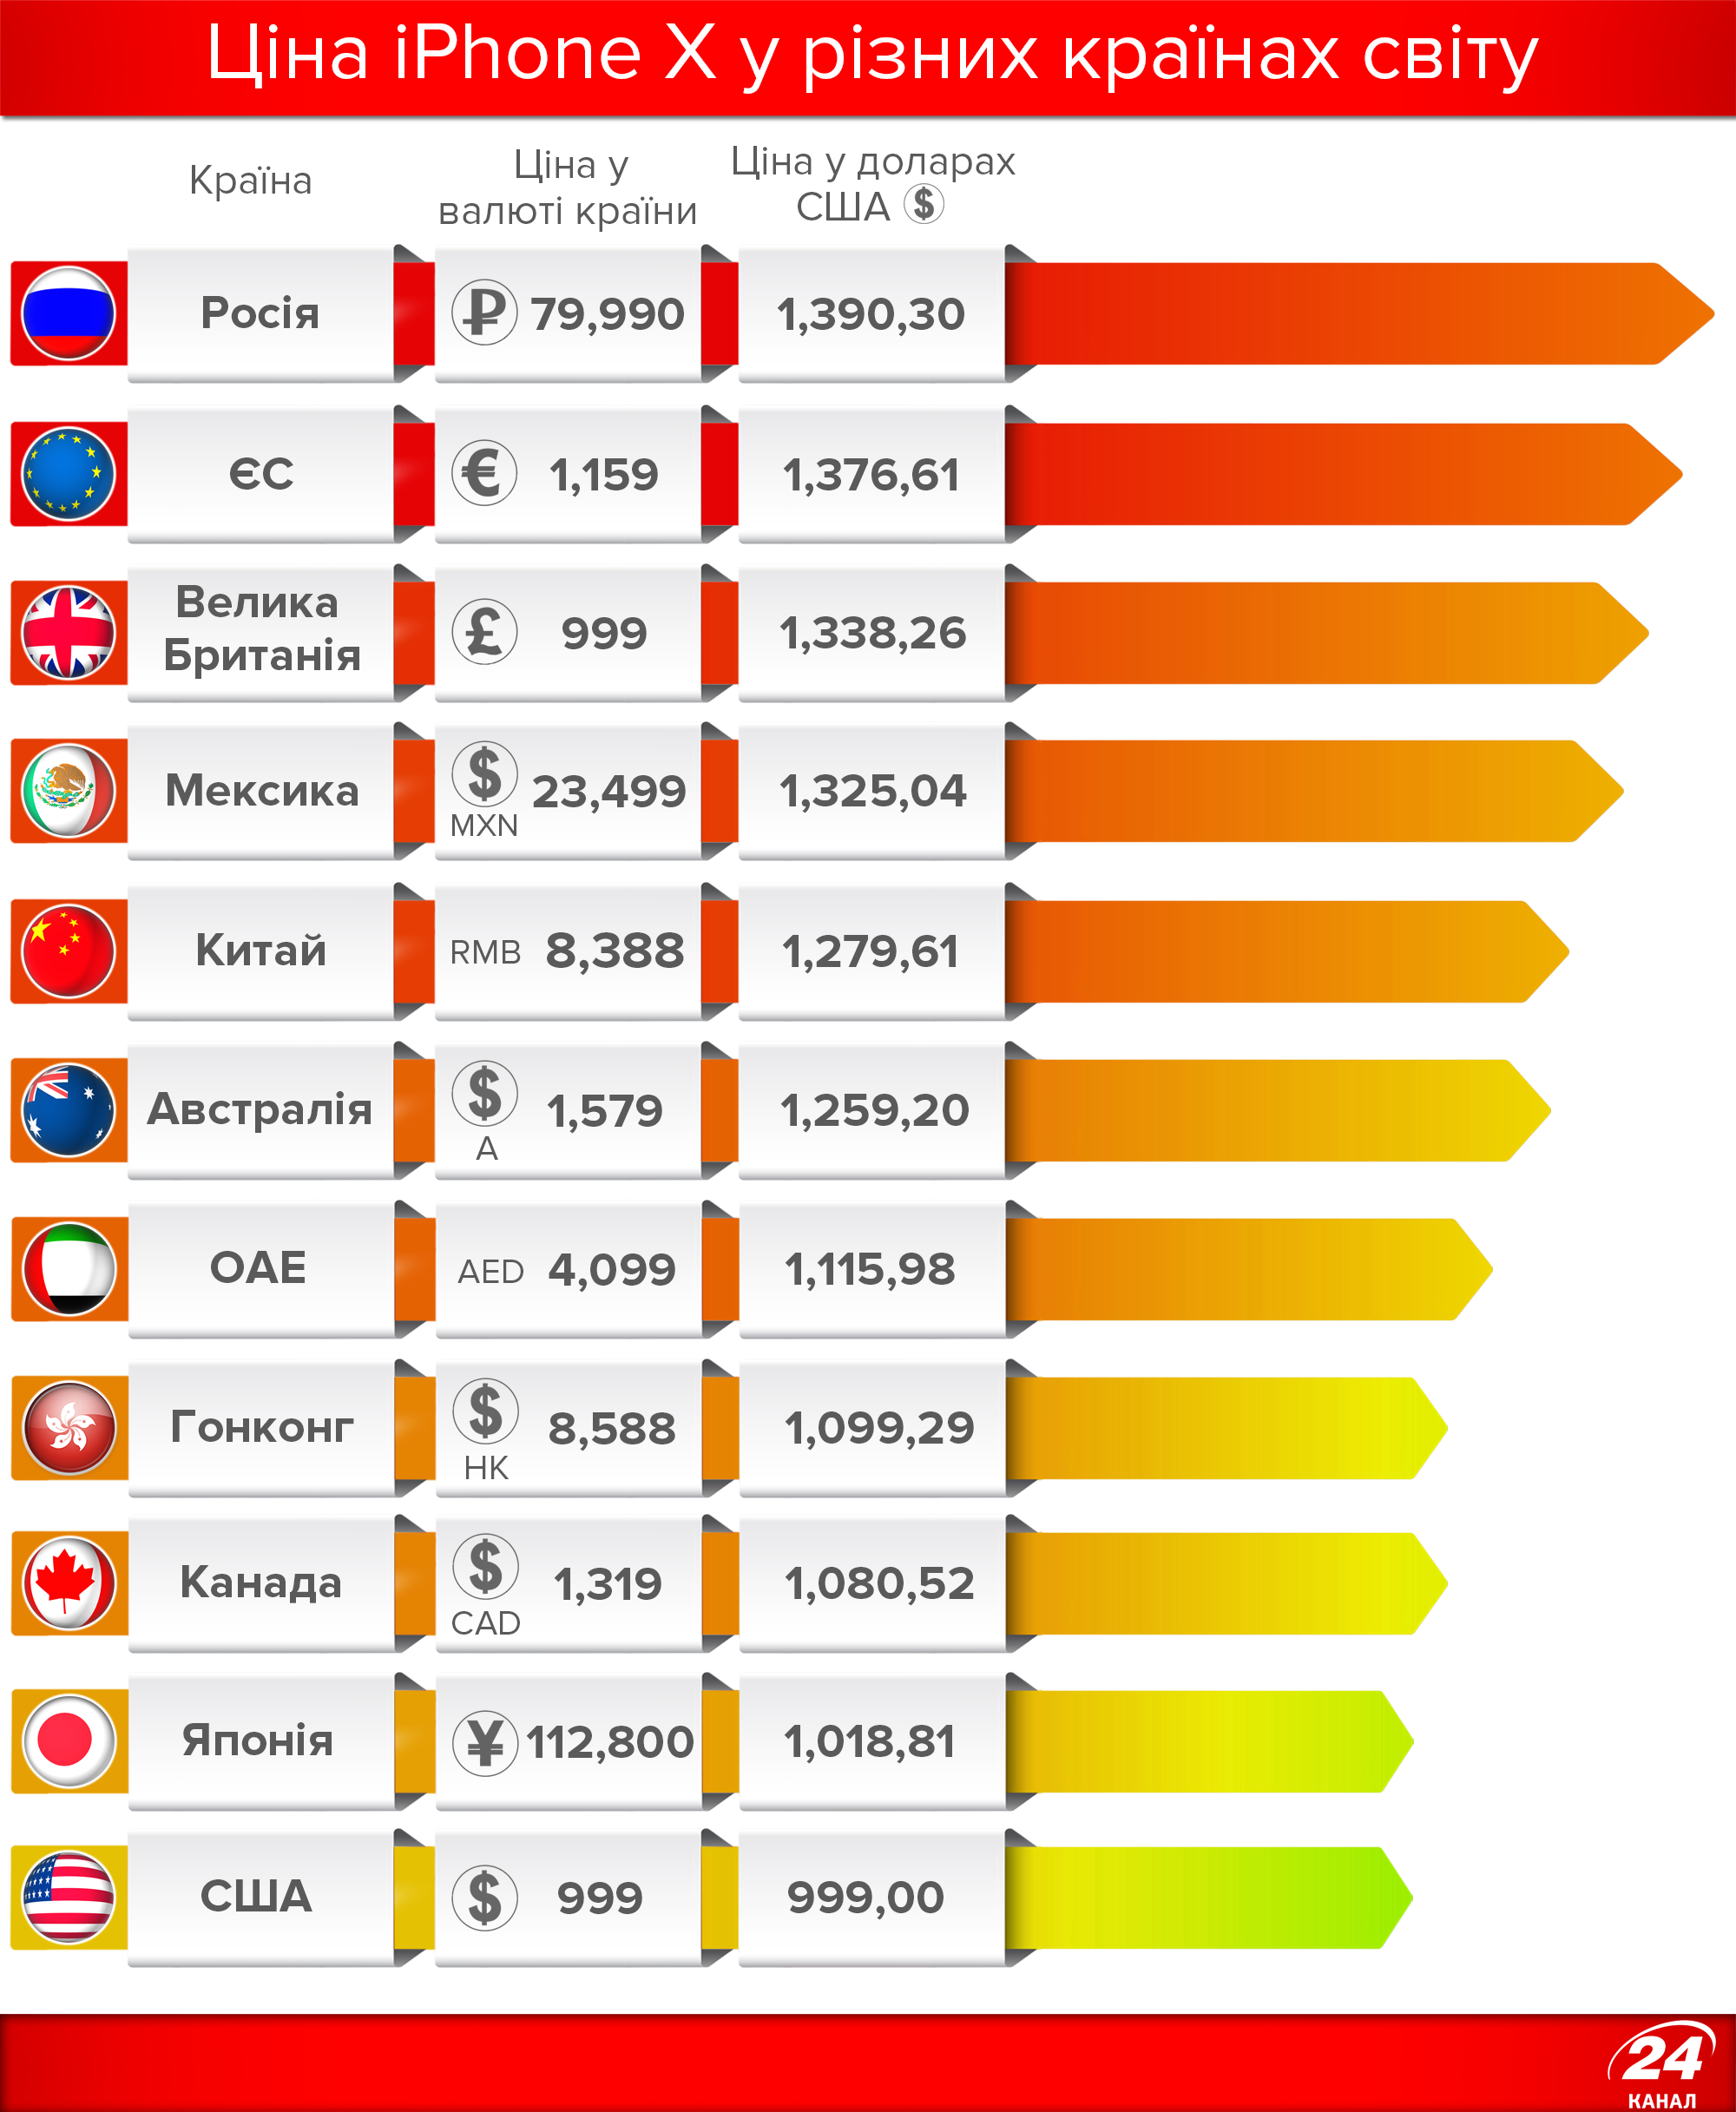 Количество продаж айфонов по странам. Количество проданных айфонов по странам. Стоимость айфона в разных странах. Статистика продаж айфонов по странам.